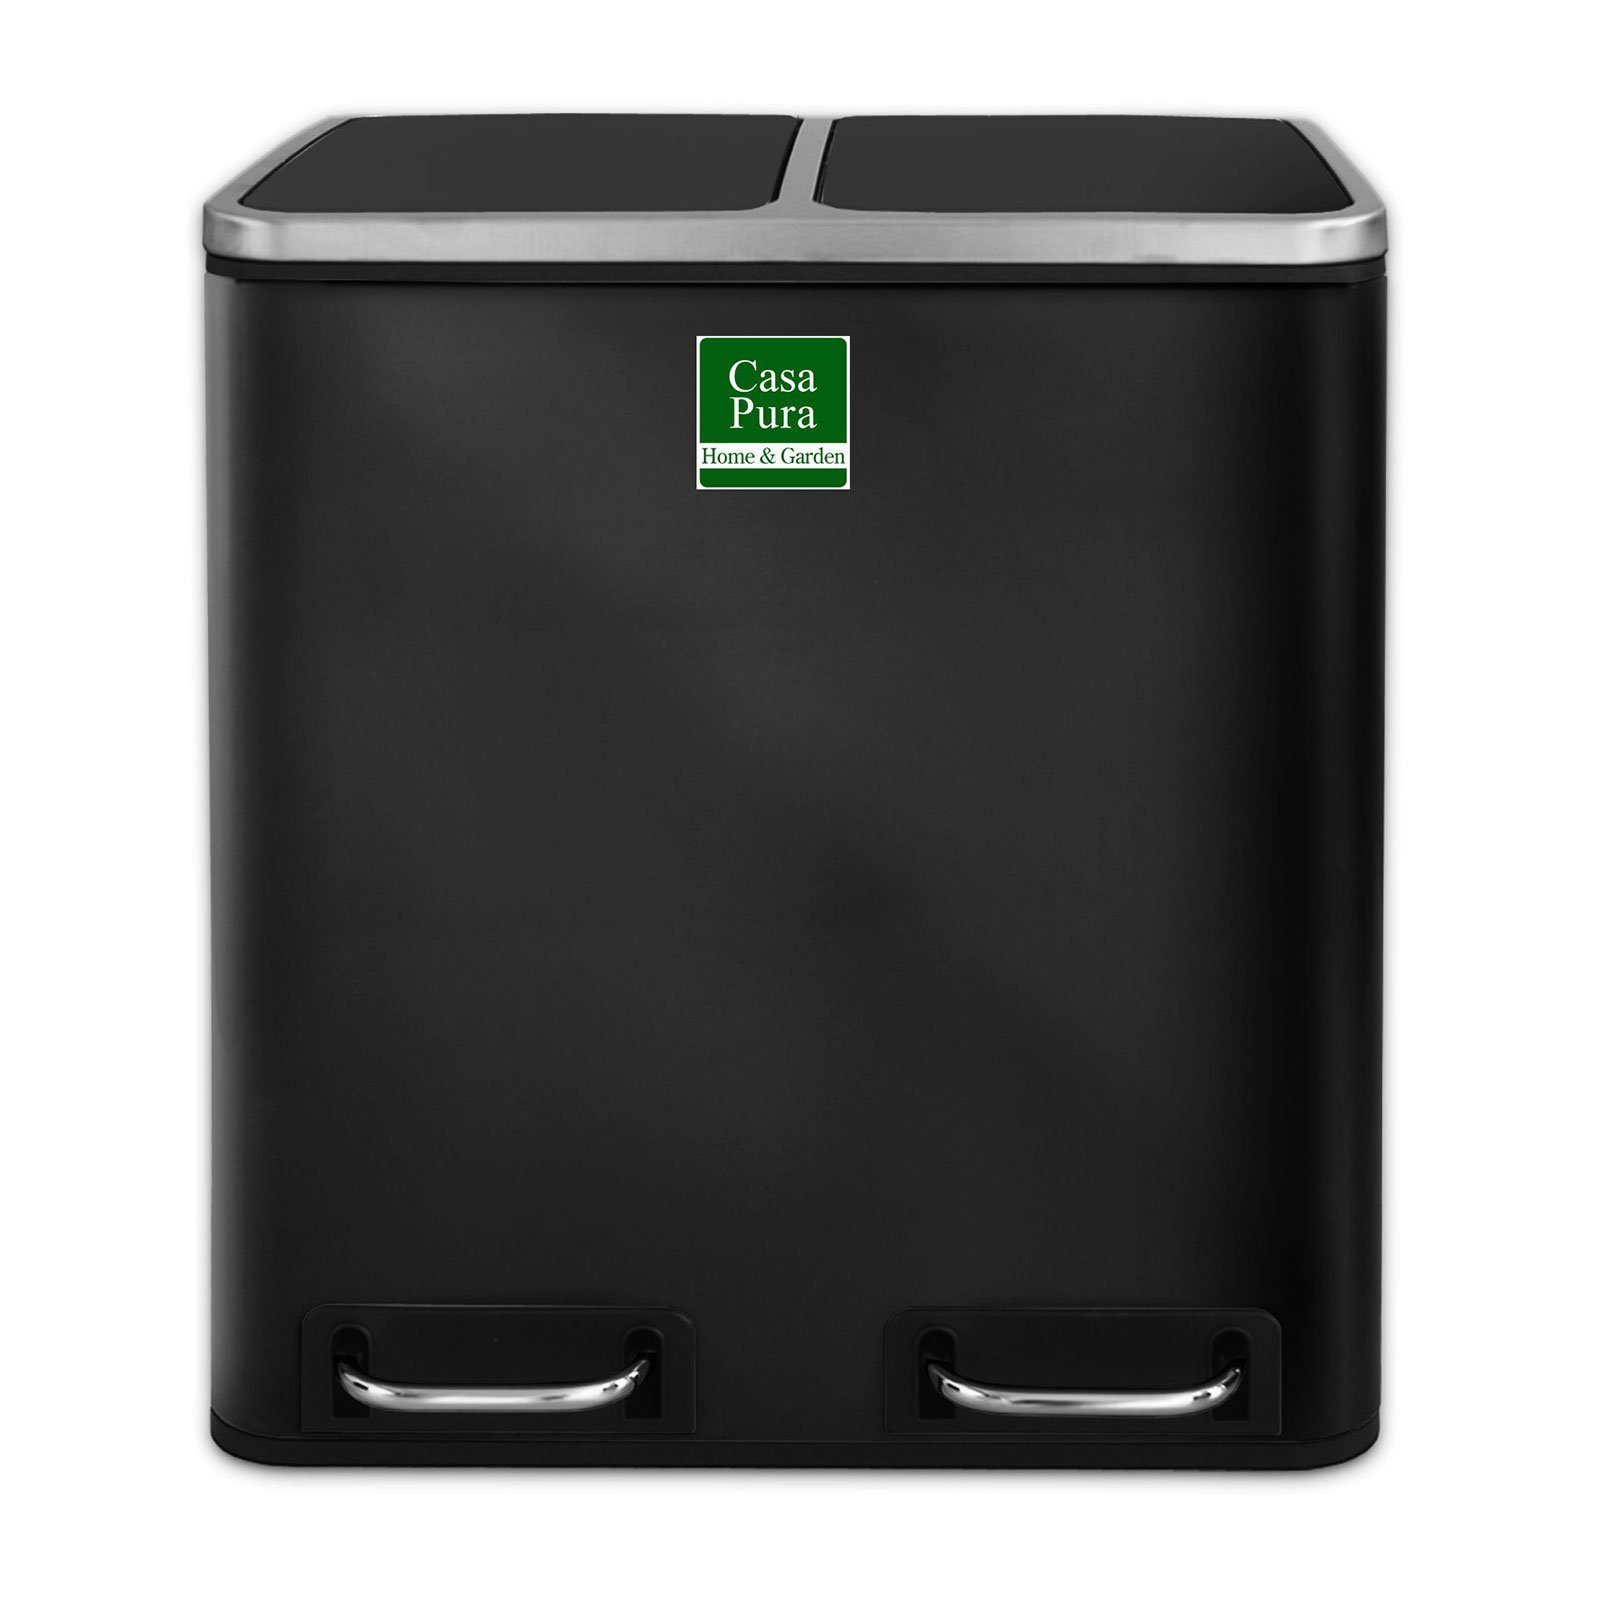 Karat Mülltrennsystem Fred, Mülleimer, 4 Farben & 4 Größen, 2-Fach-Trennsystem, 30 Liter Fassungsvermögen